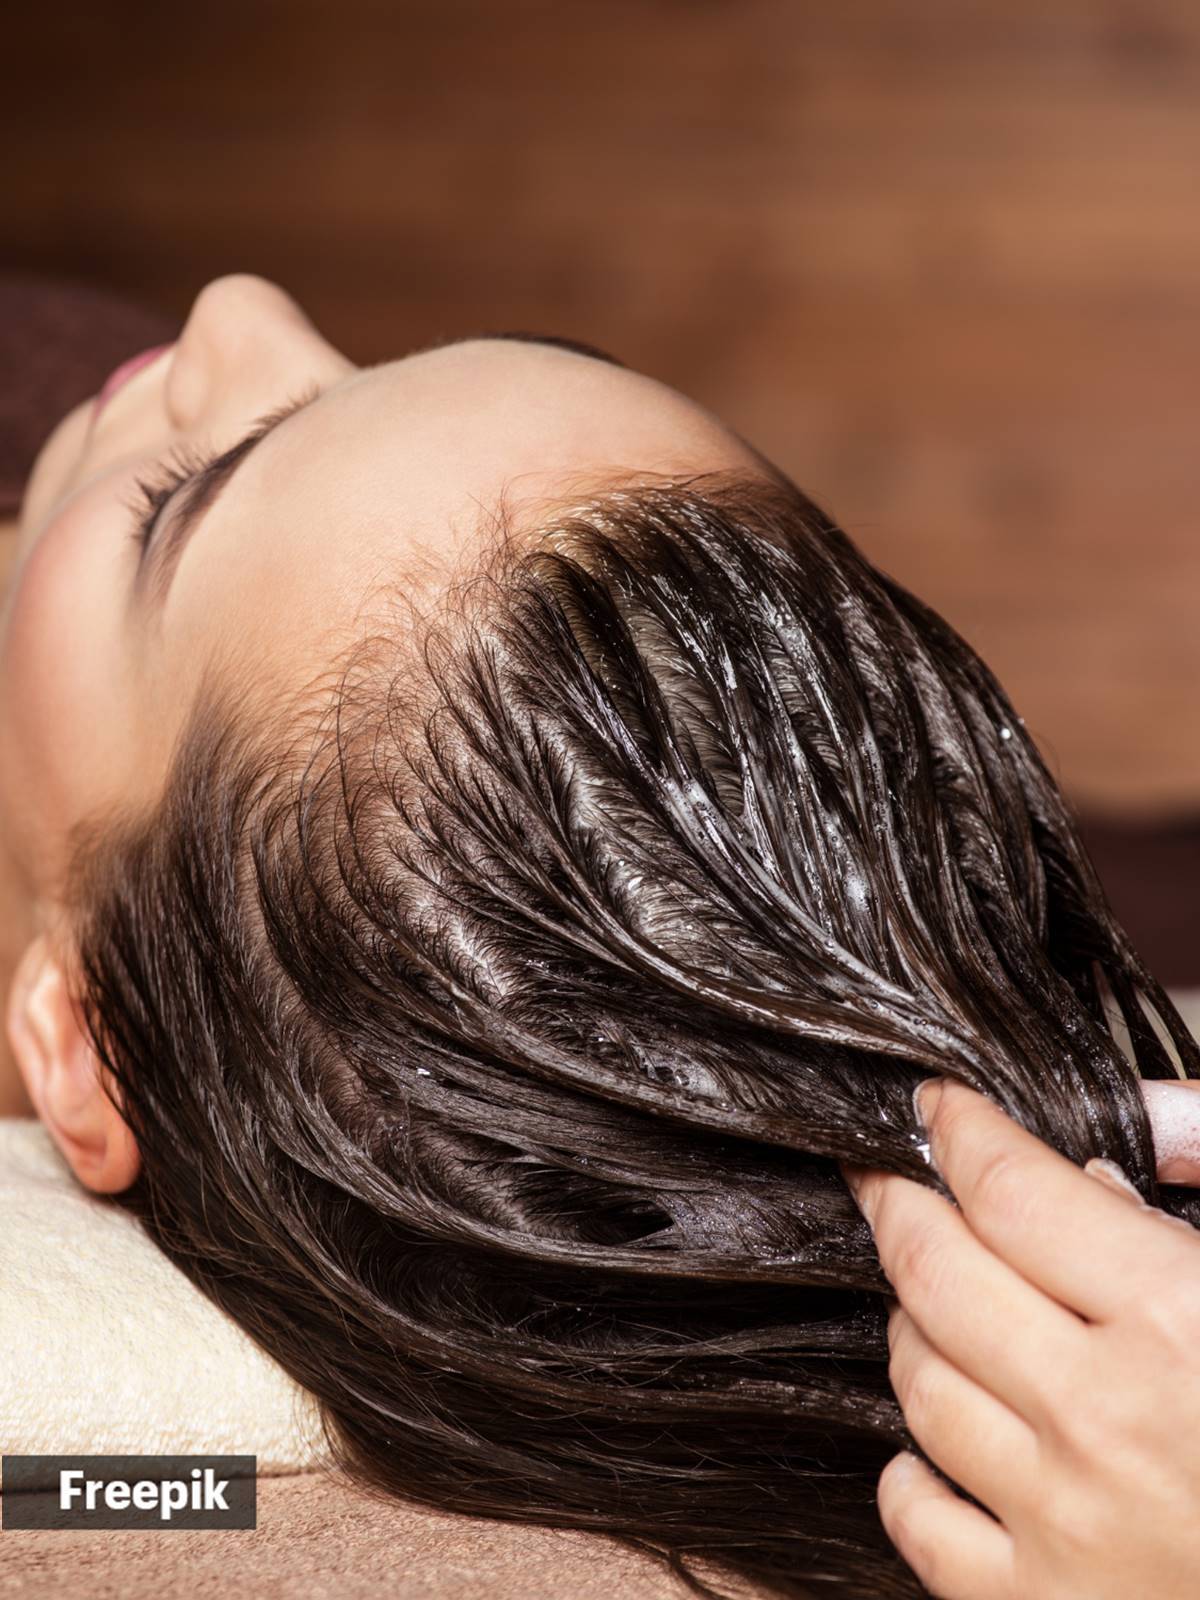 El aceite capilar puede ser beneficioso para la salud del cabello si se aplica correctamente. Ayuda a nutrir el cuero cabelludo, hidratar los folículos pilosos y prevenir la sequedad.